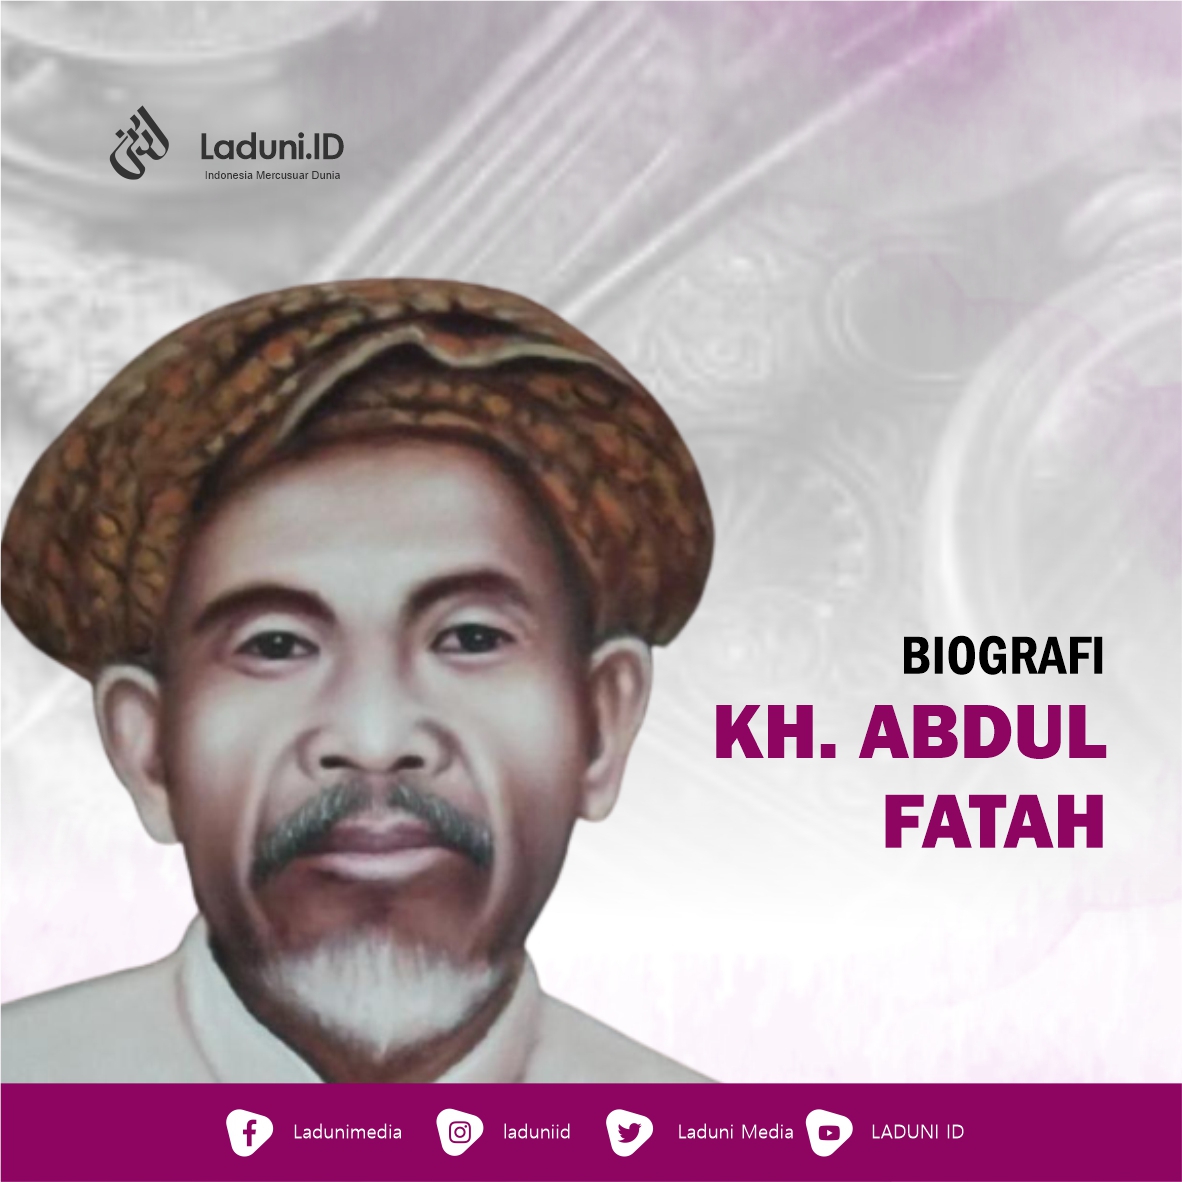 Biografi KH. Abdul Fatah